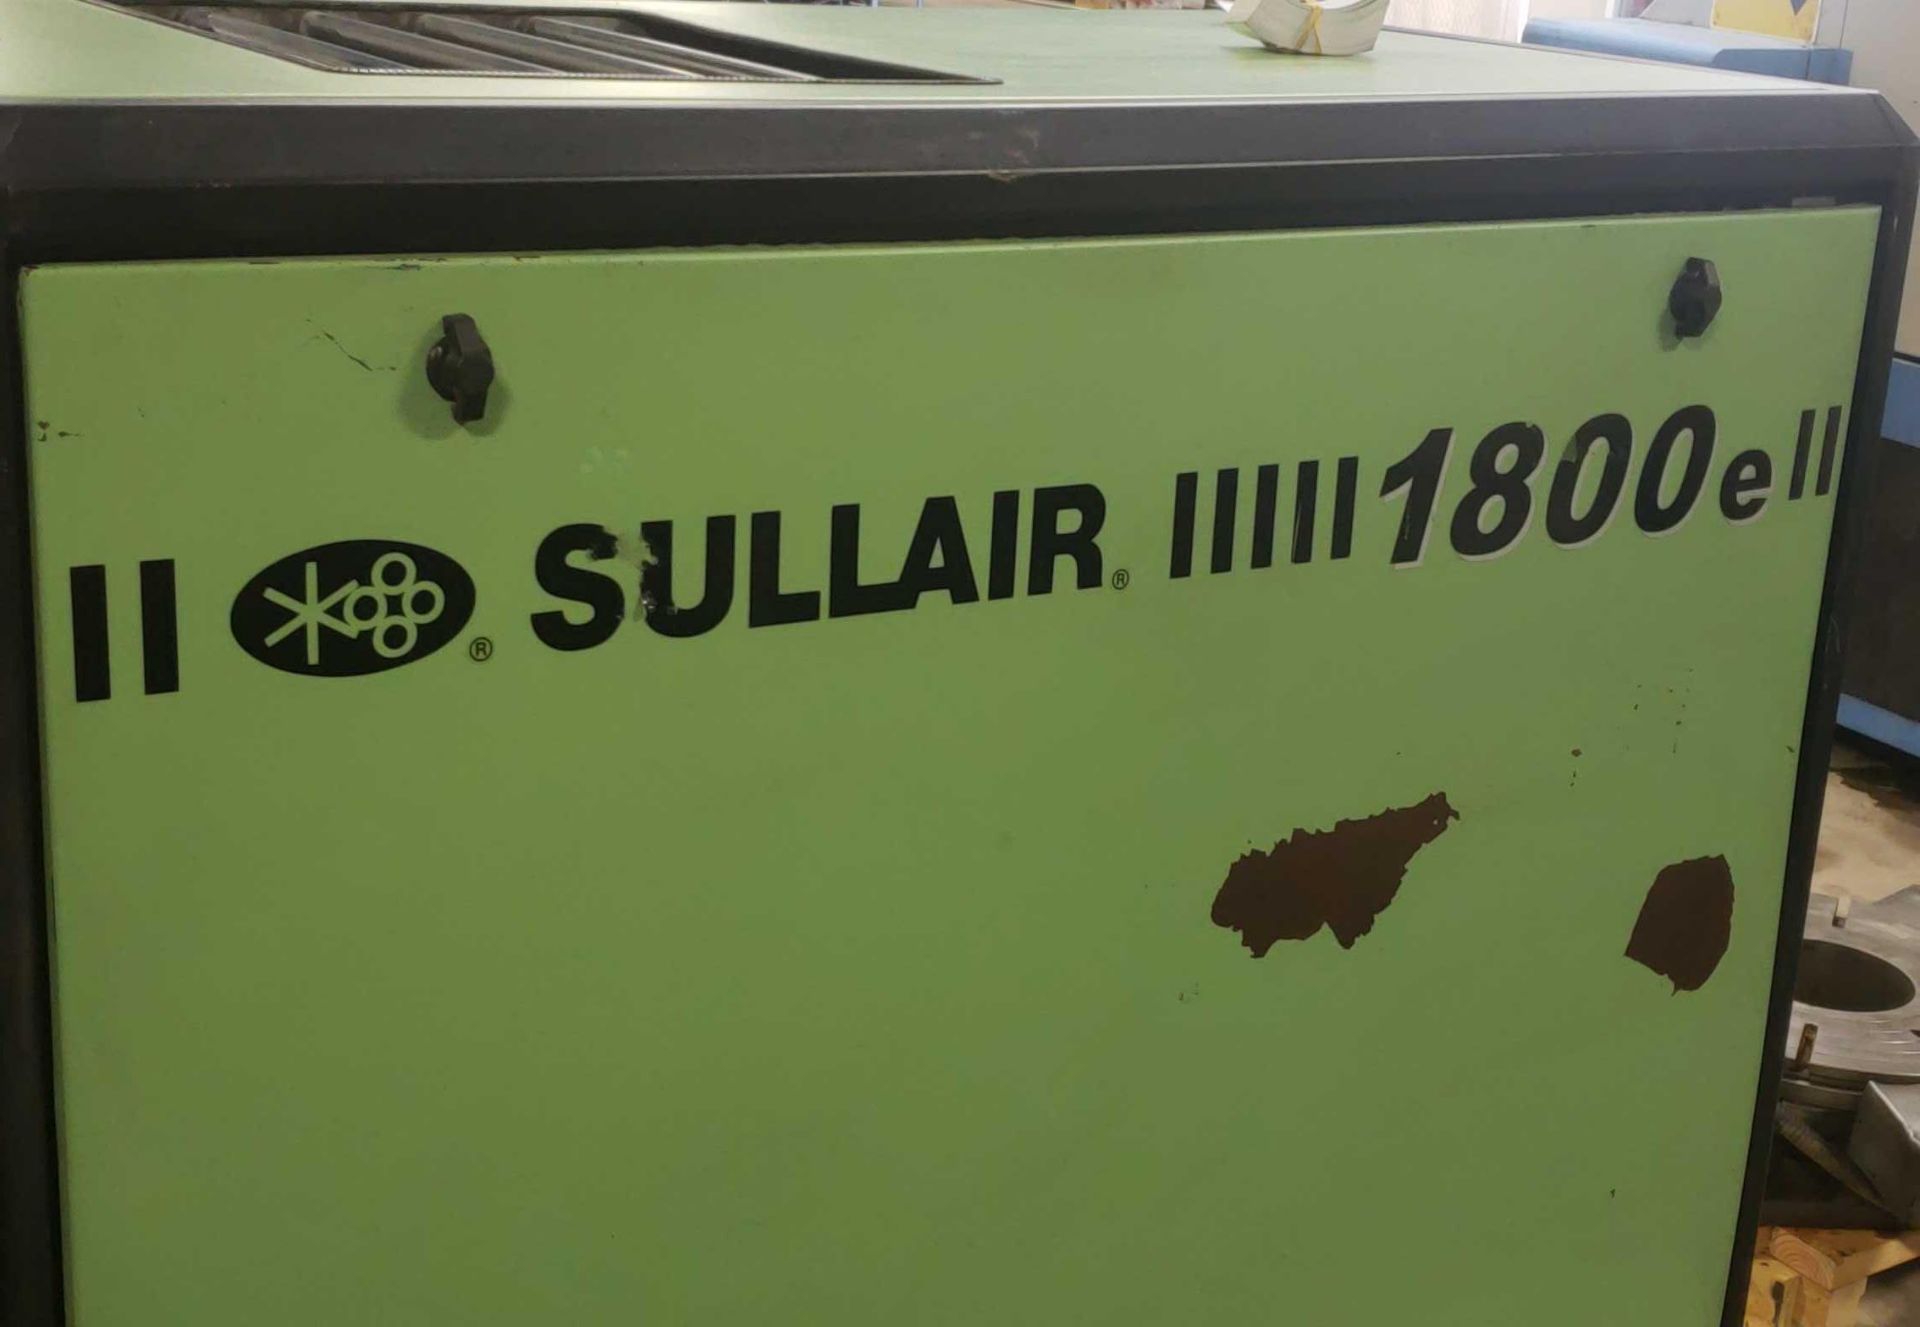 Sullair 1800e model 1809E1A 25HP Air Compressor 201005170065 - Image 2 of 3